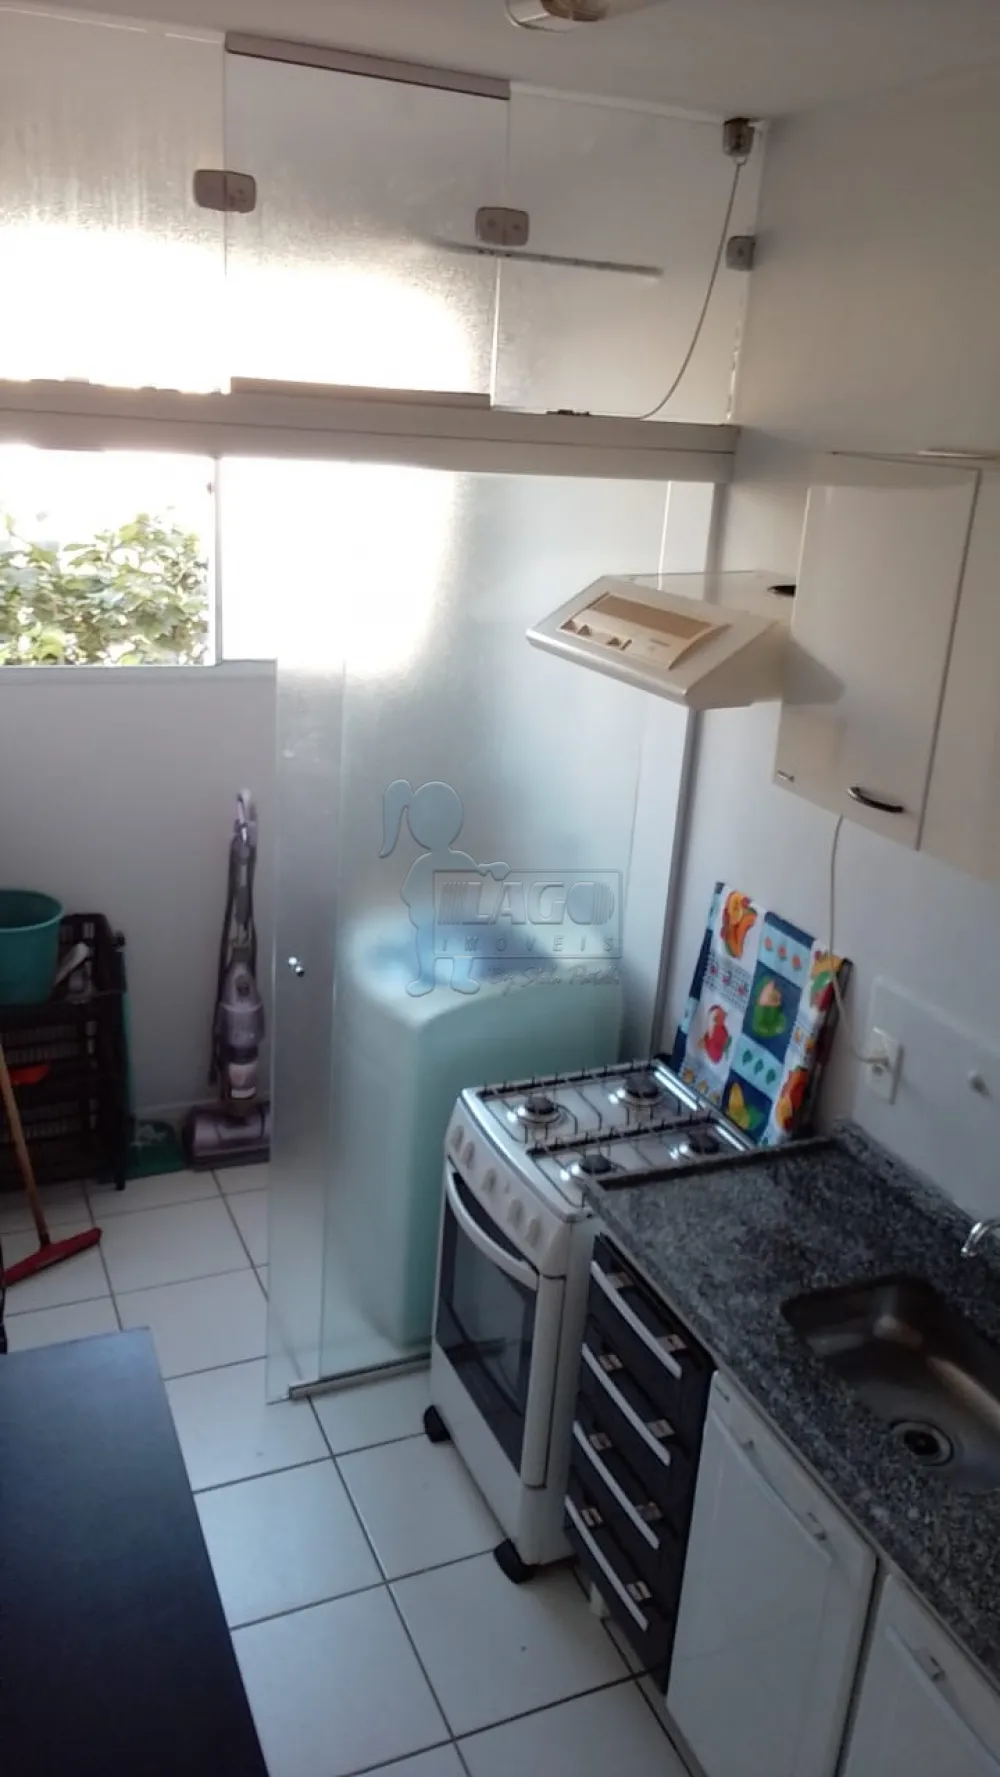 Comprar Apartamentos / Padrão em Ribeirão Preto R$ 170.000,00 - Foto 5